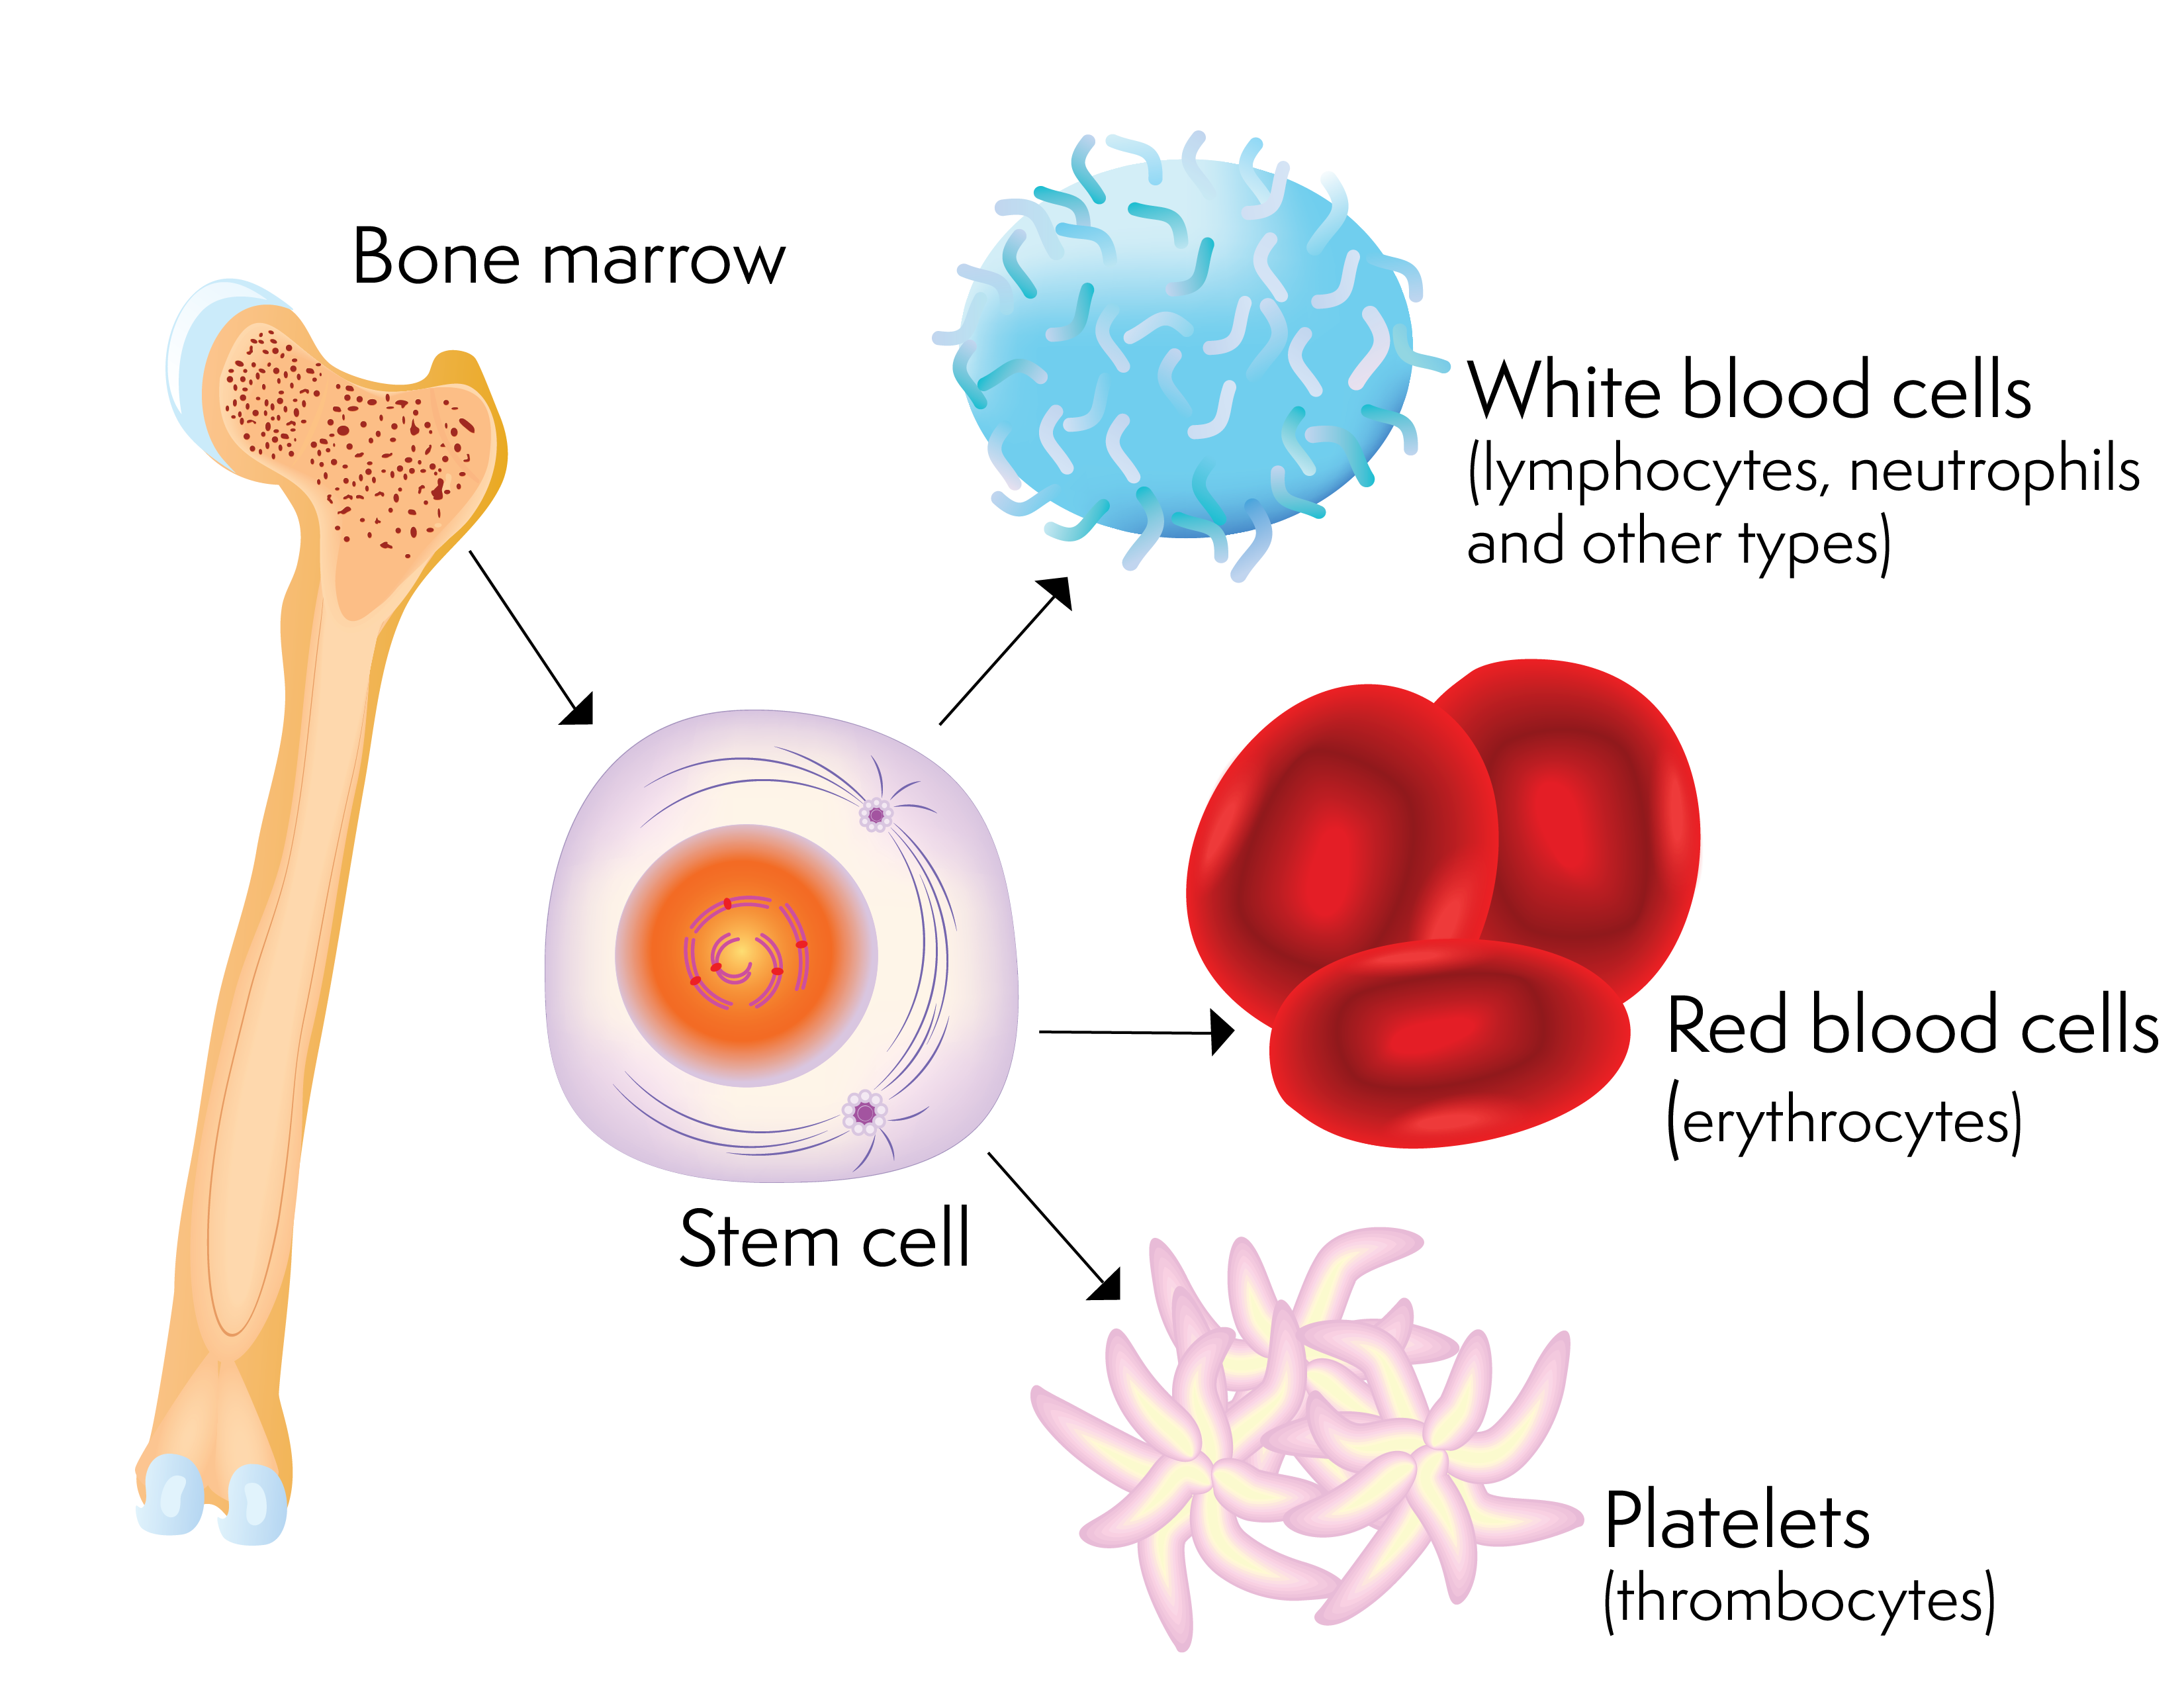 Una célula madre y las células sanguíneas que puede producir